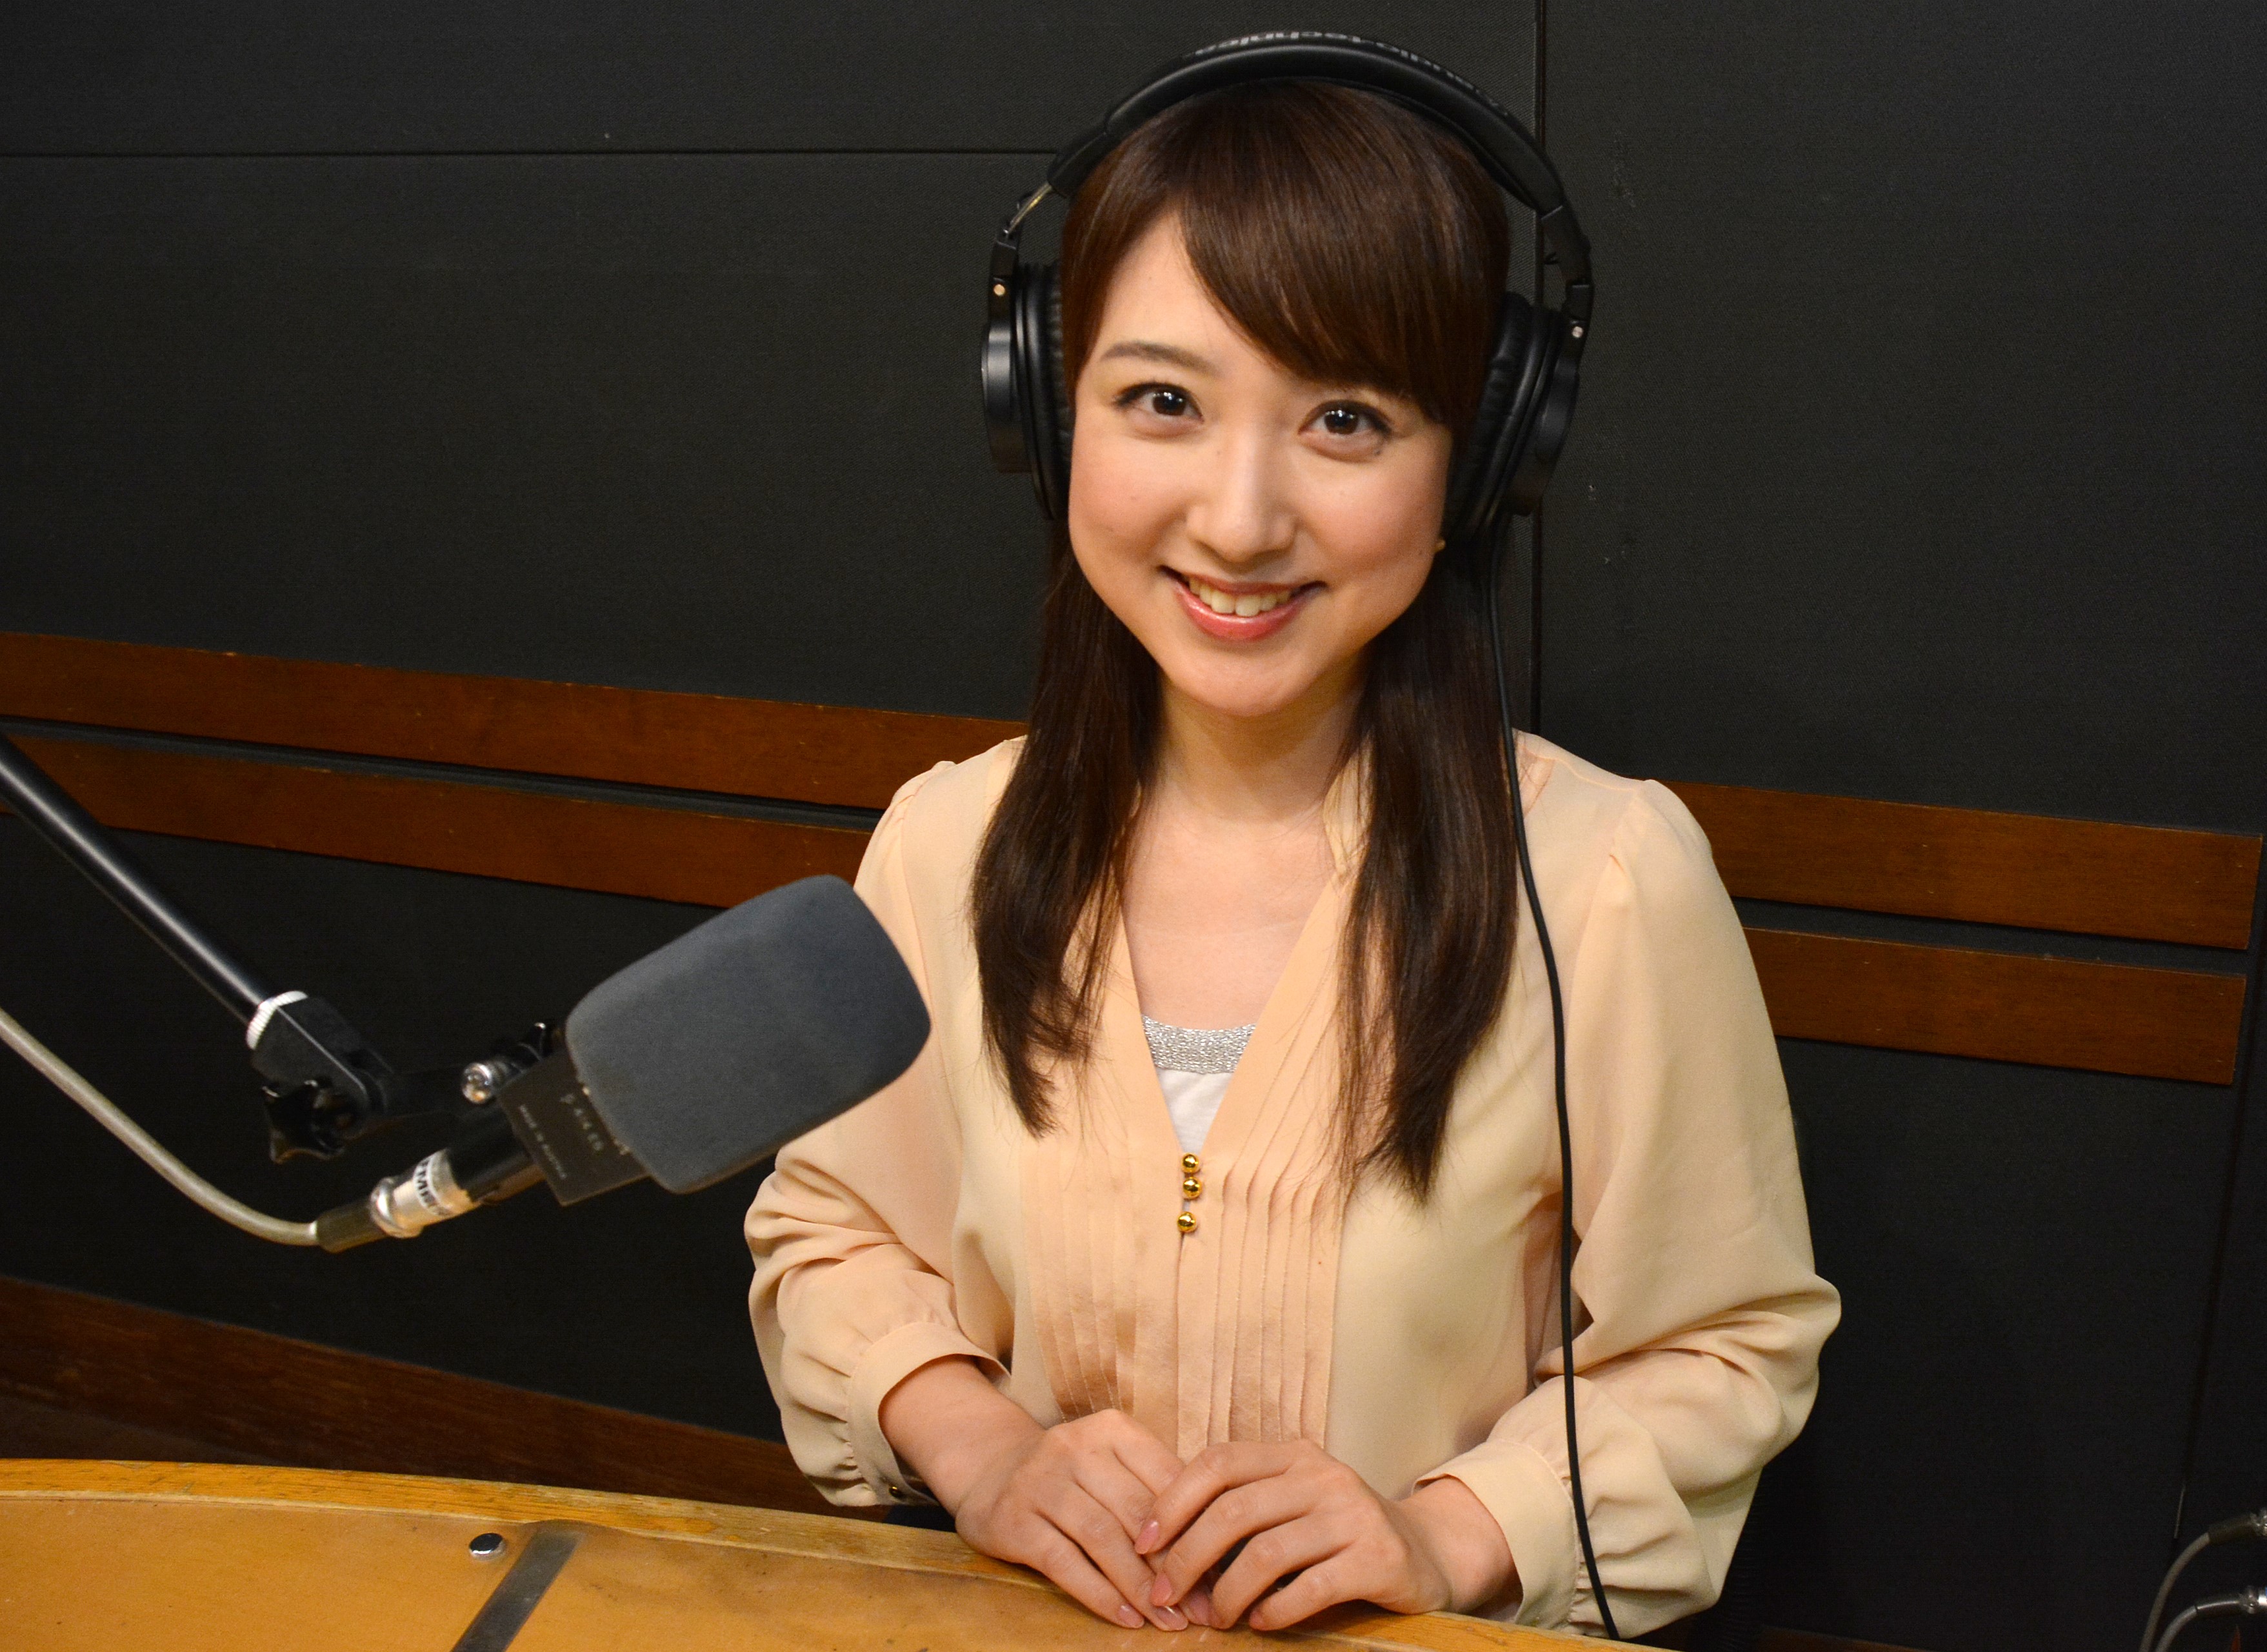 川田裕美がフリー転身後初のラジオ番組に挑戦 Orico Presents Field Of Dreams Tokyo Fmのプレスリリース